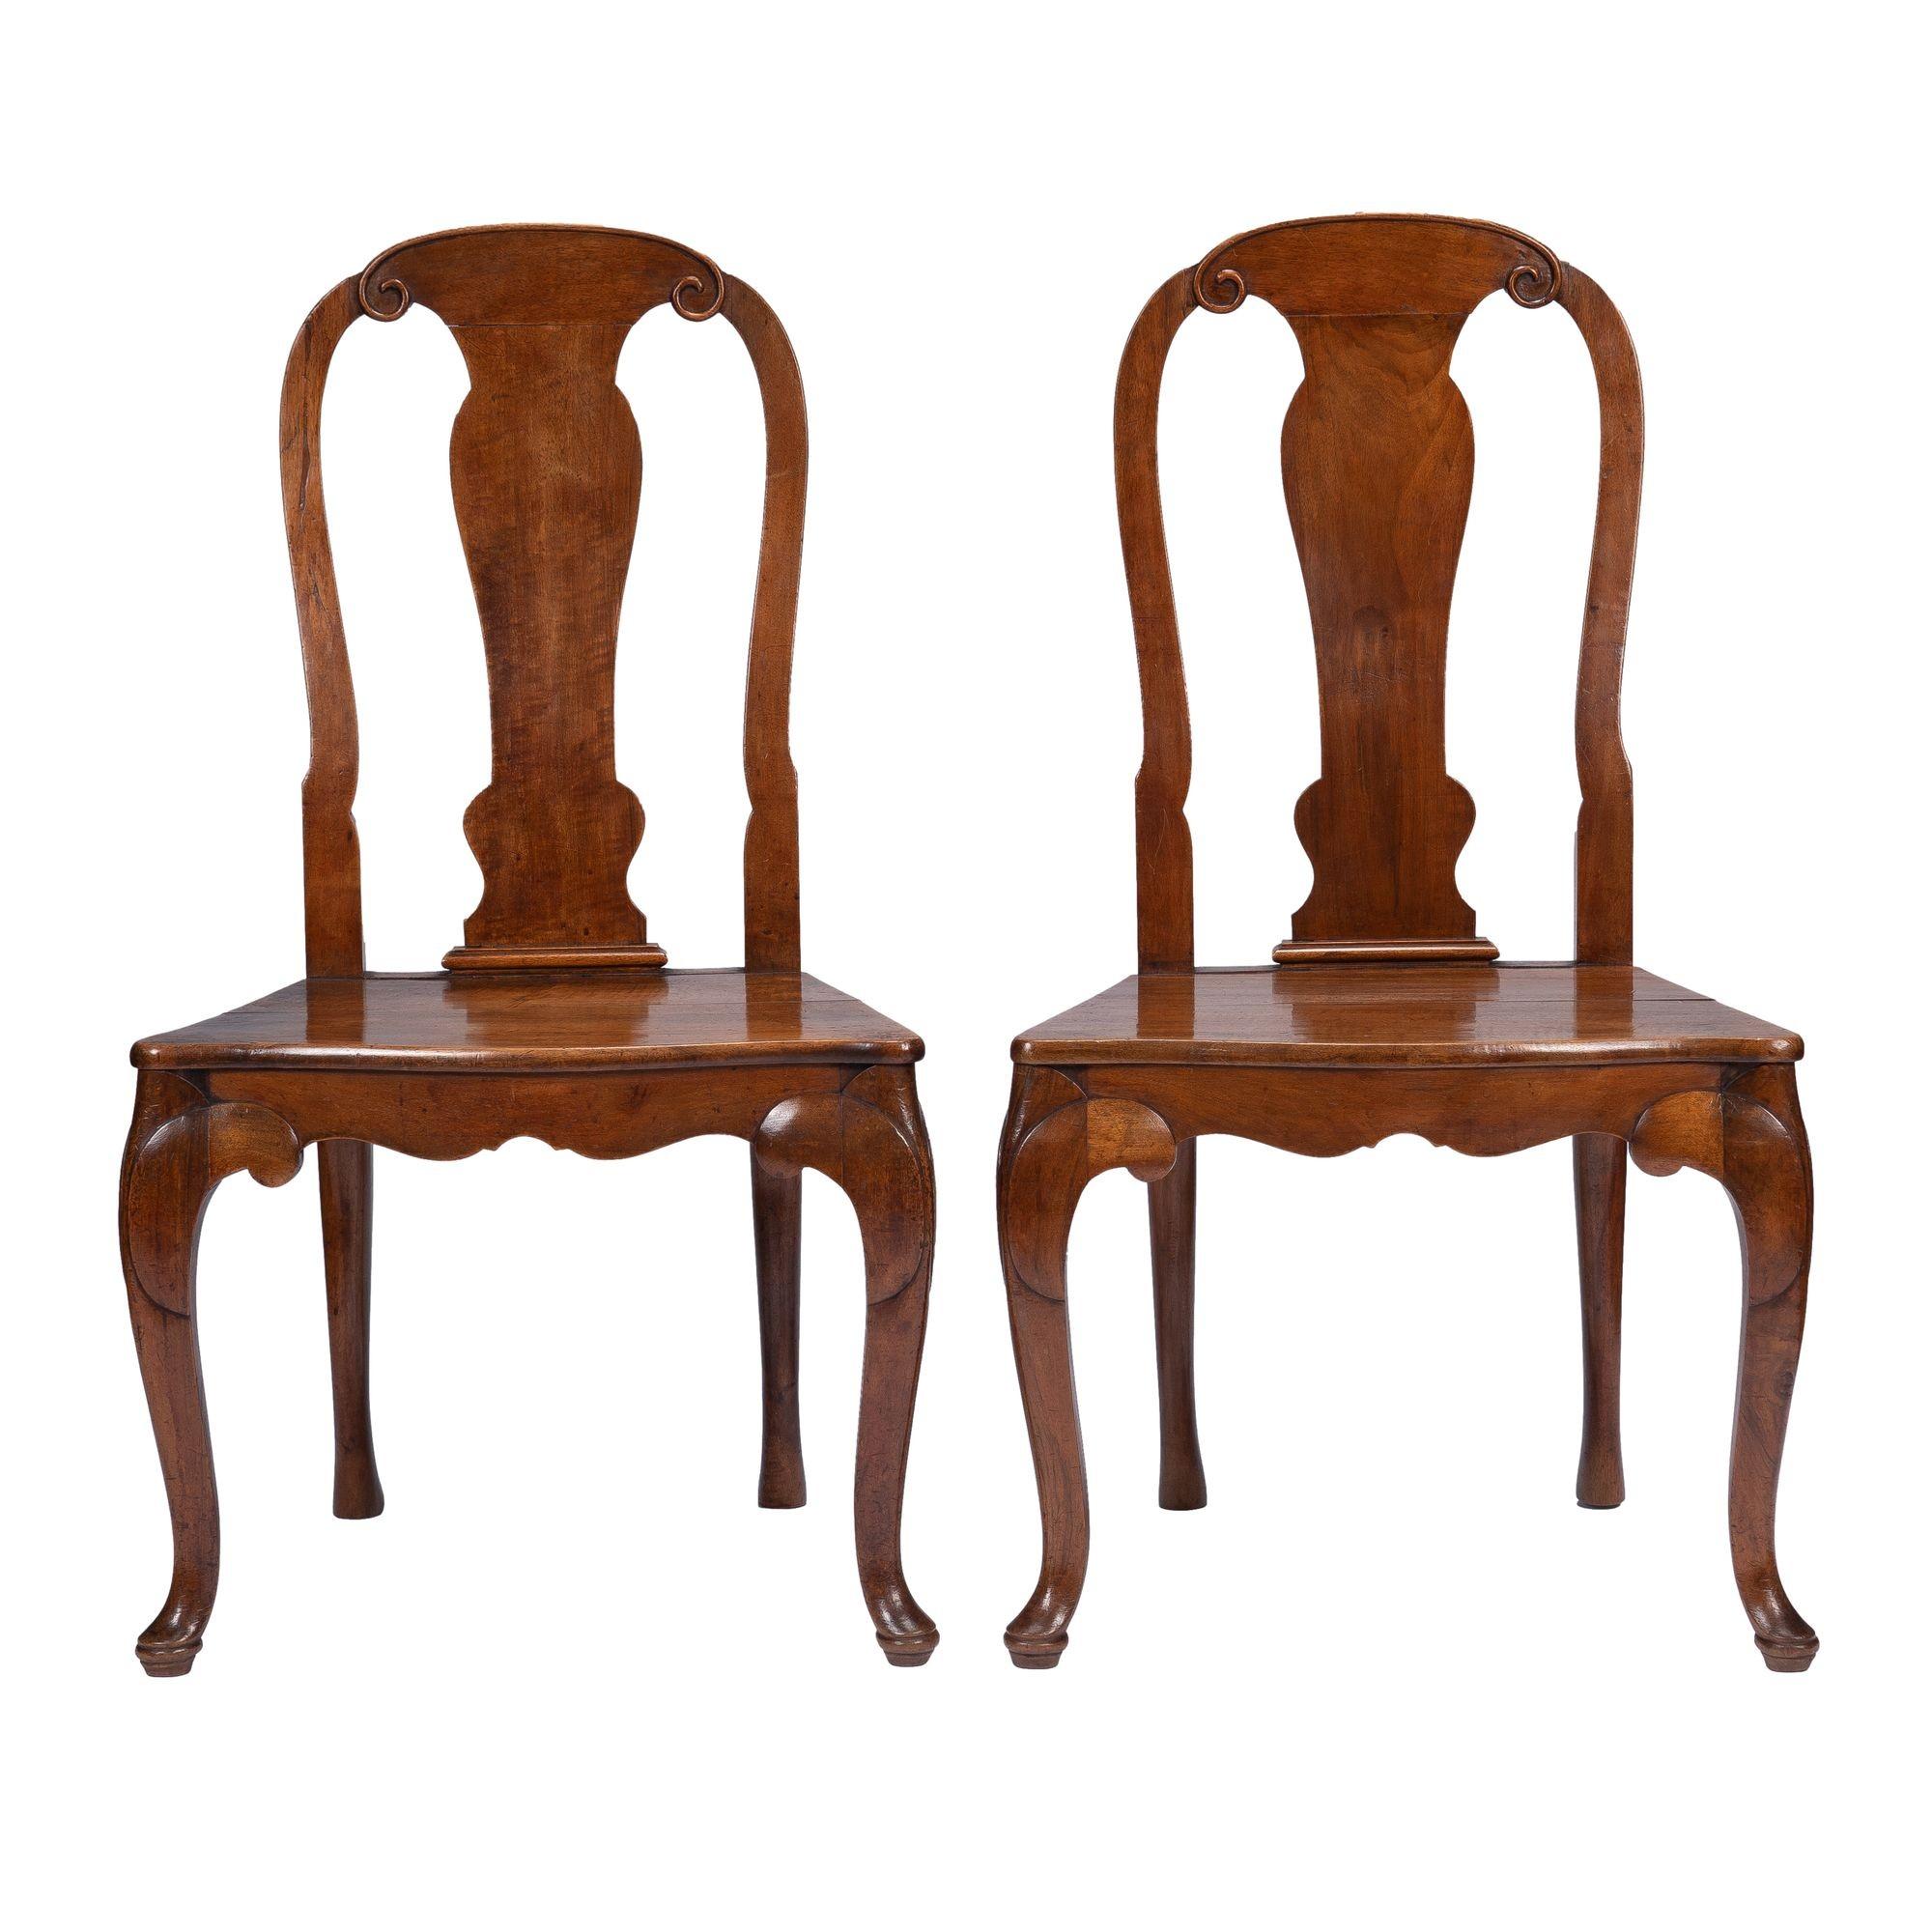 Paar französische Nussbaum-Dielenstühle auf Cabriole-Beinen im Louis XV-Stil. Die hohen Stuhllehnen rahmen eine geformte zentrale Rückenlehne ein, die an der Basis der Sitzfläche in einem Schuh endet. Die Stühle sind mit maßgefertigten Sitzpolstern